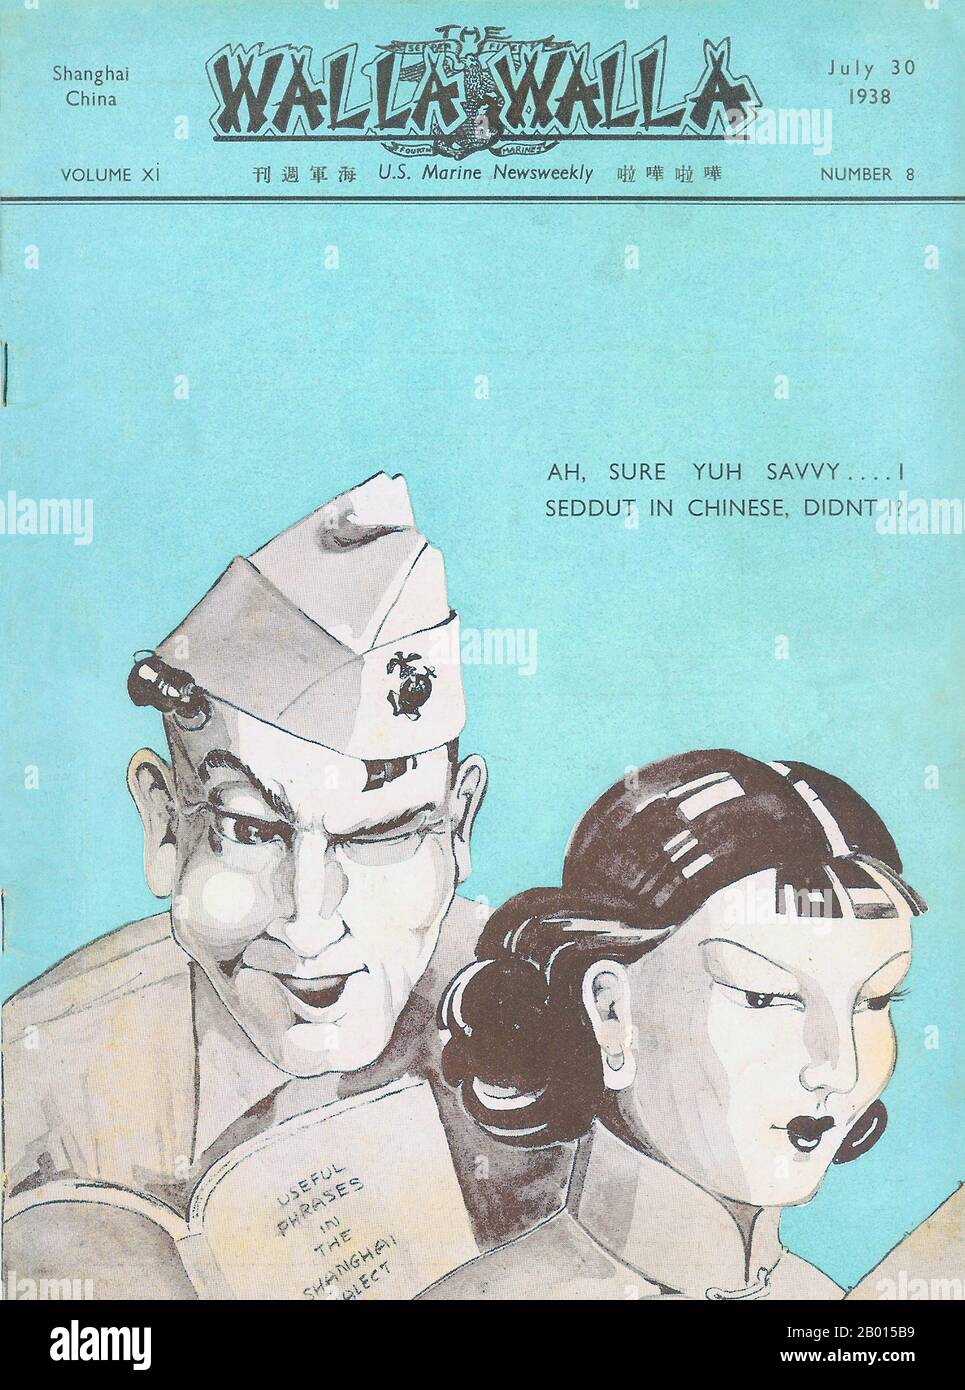 Chine : couverture de Walla Walla, US Marine News Weekly, juillet 30 1938. Caricature satirique sur l'apprentissage marin américain Shanghainese, ou dialecte Wu du chinois. Banque D'Images